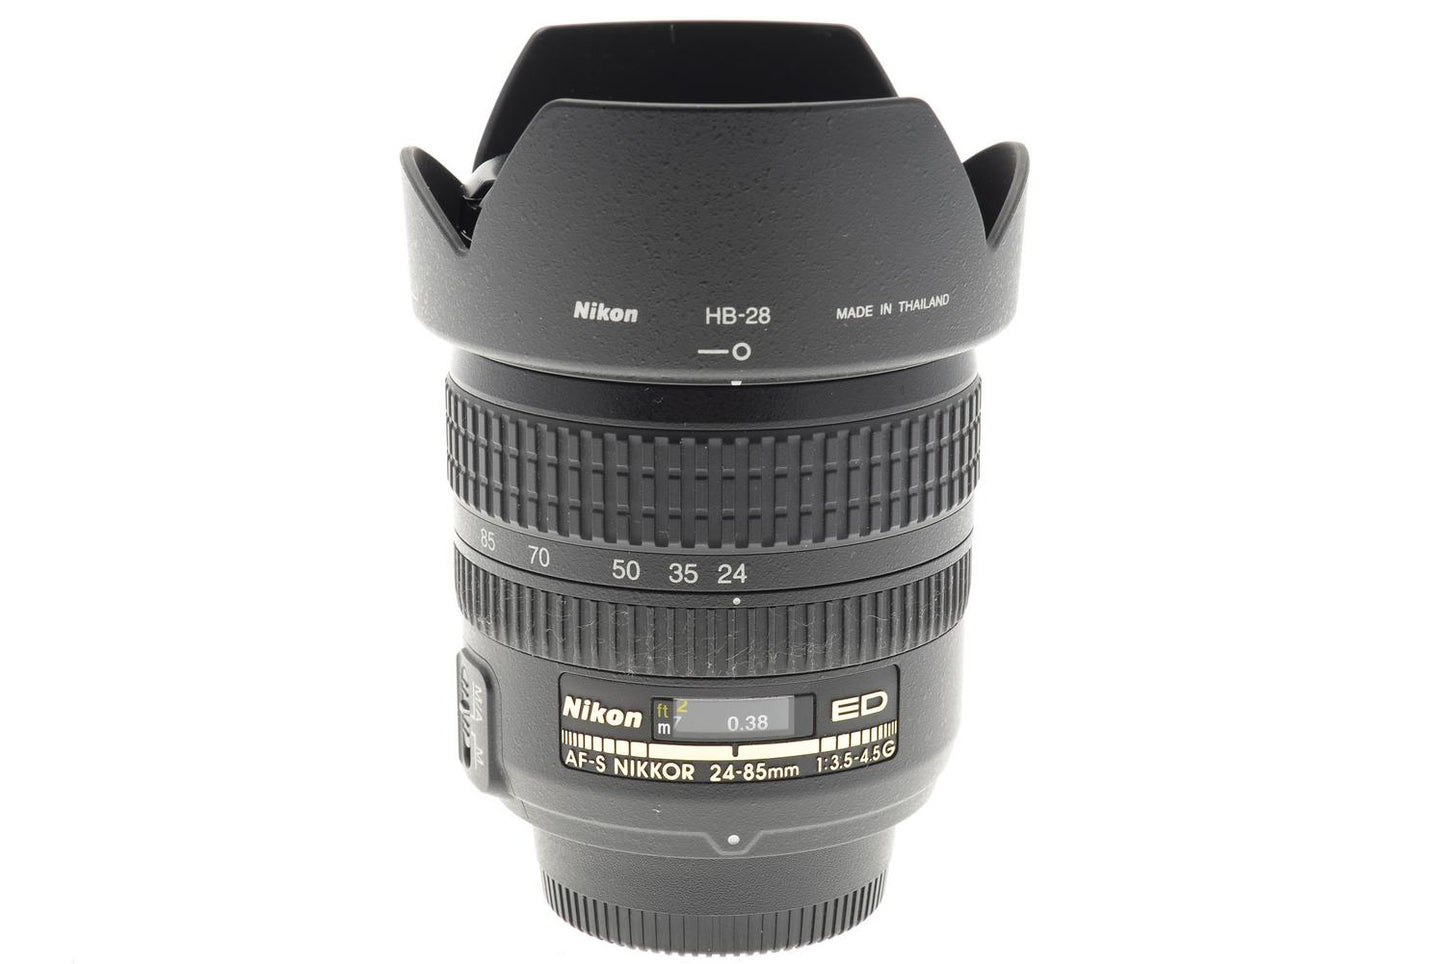 Nikon 24-85mm f3.5-4.5 G ED IF AF-S Nikkor - Lens